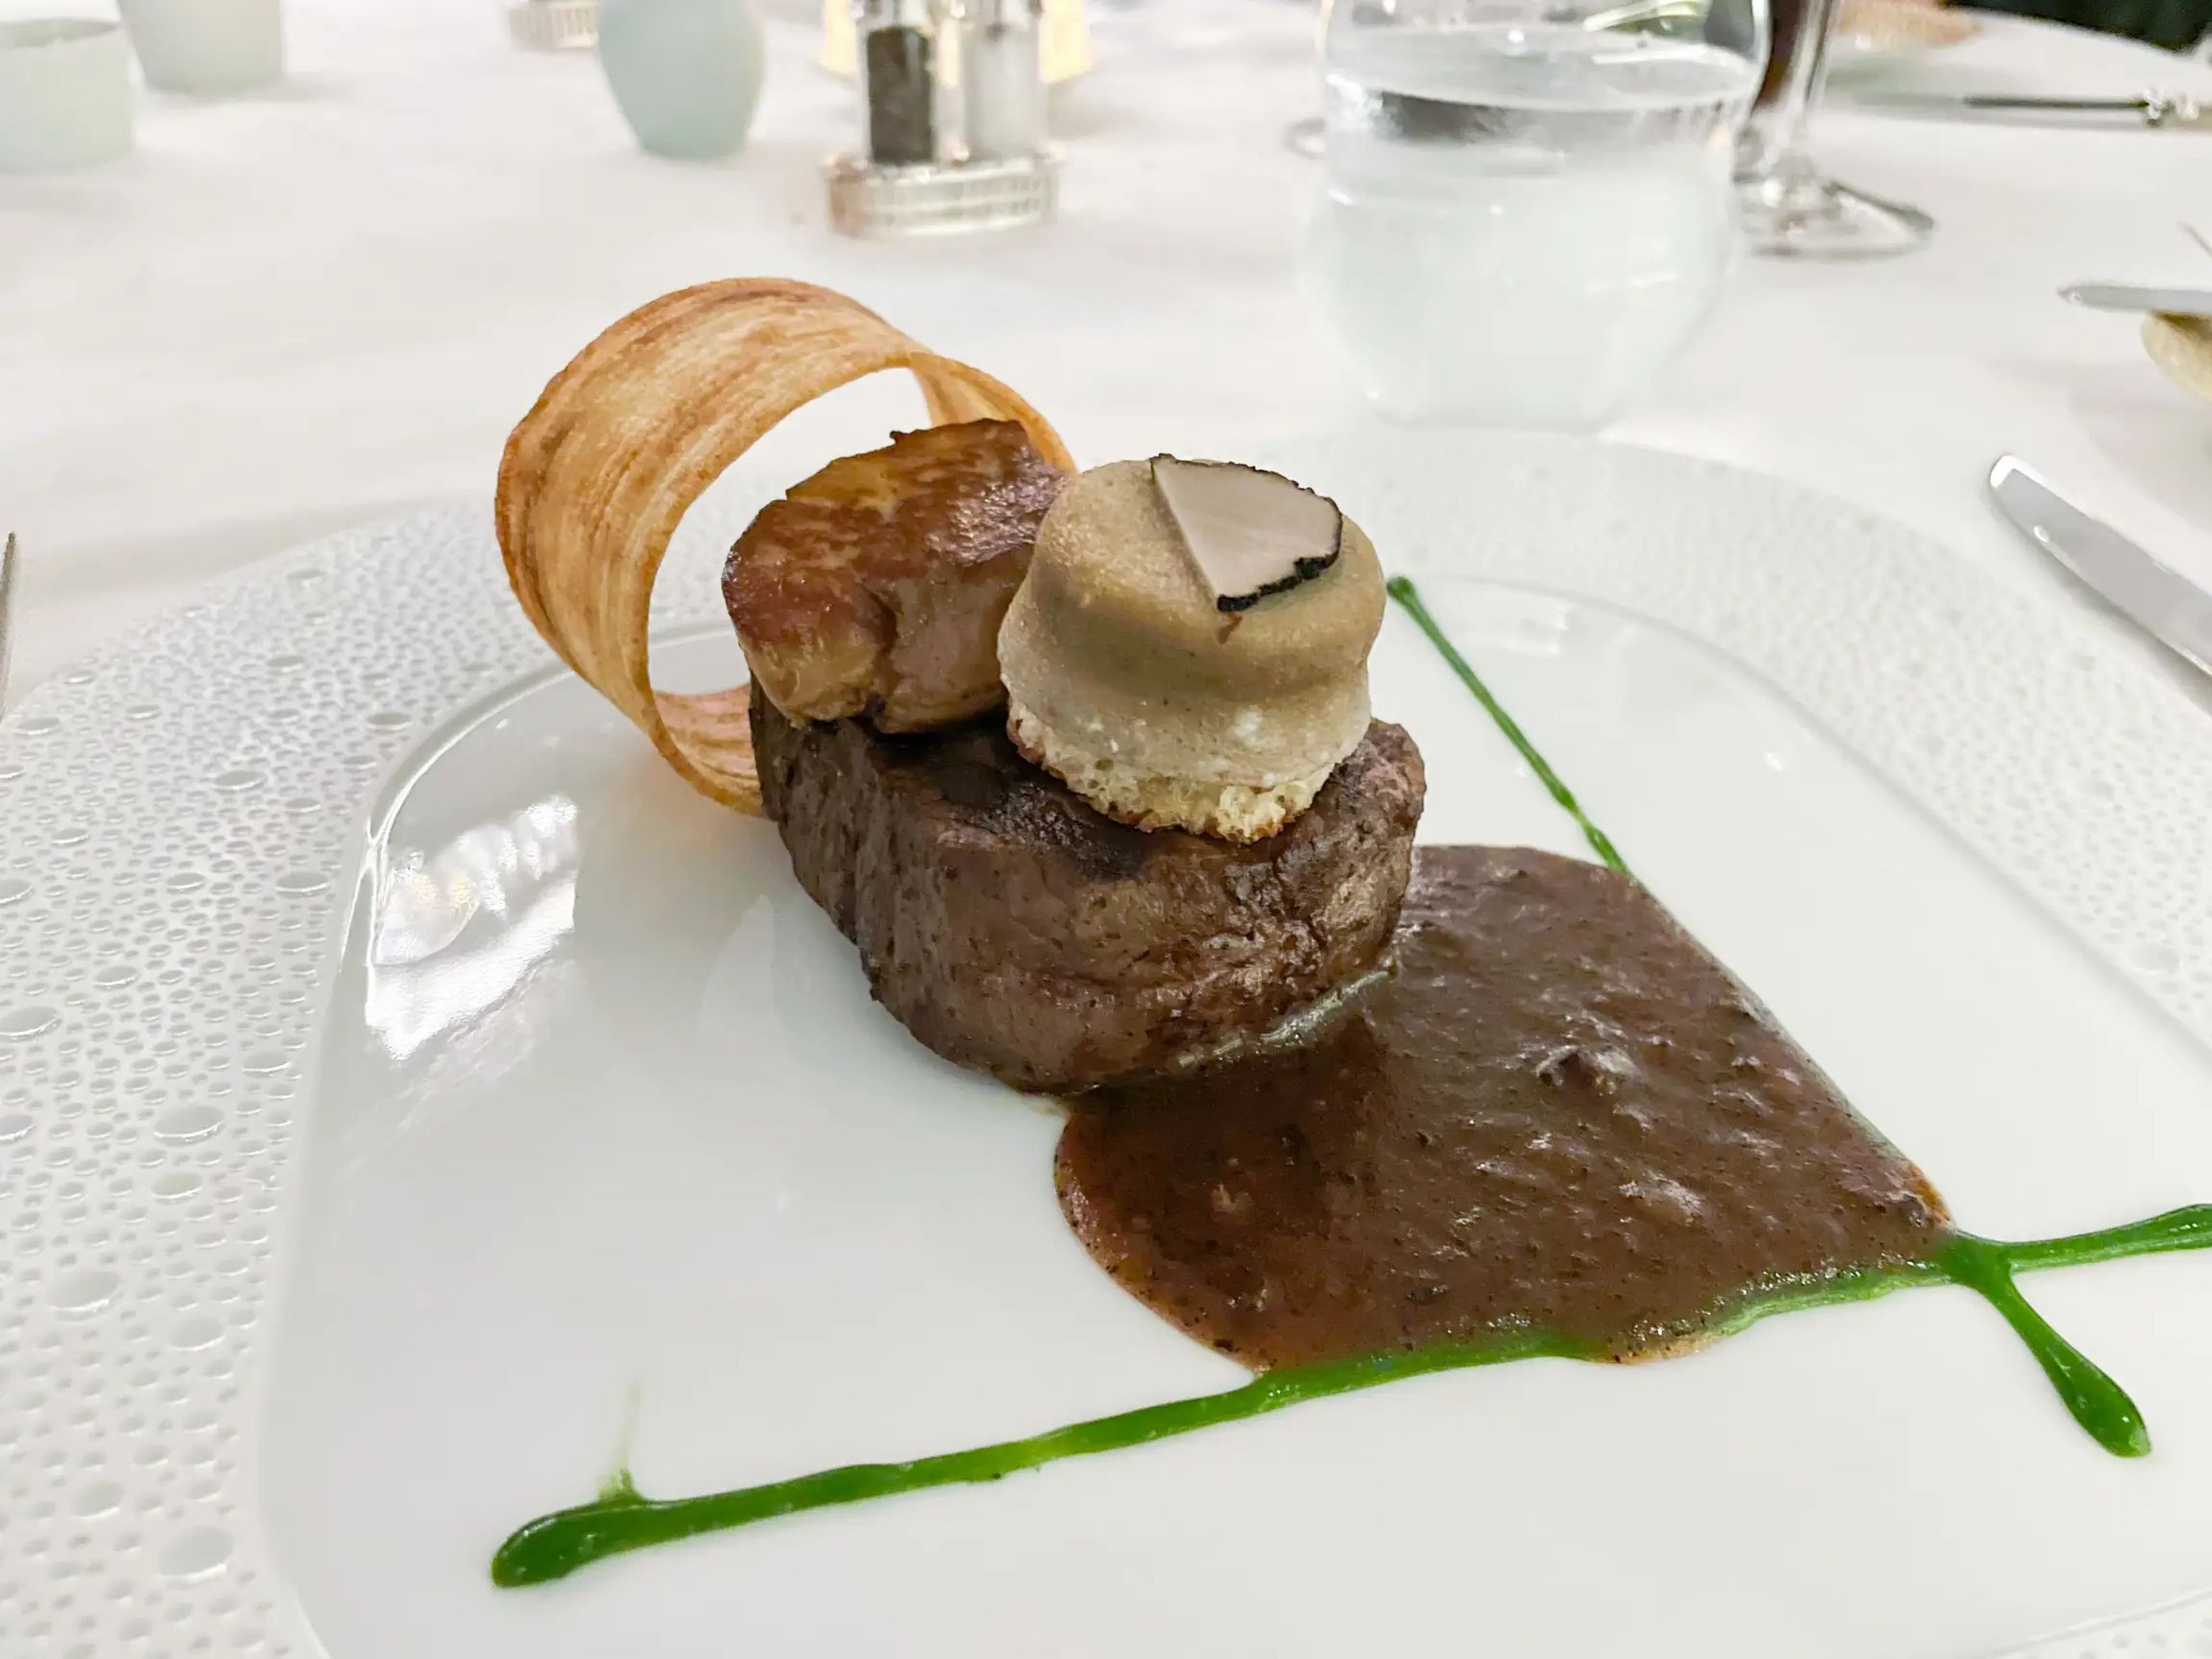 El solomillo de ternera de Chartreuse estaba cubierto de lujos como foie gras braseado.